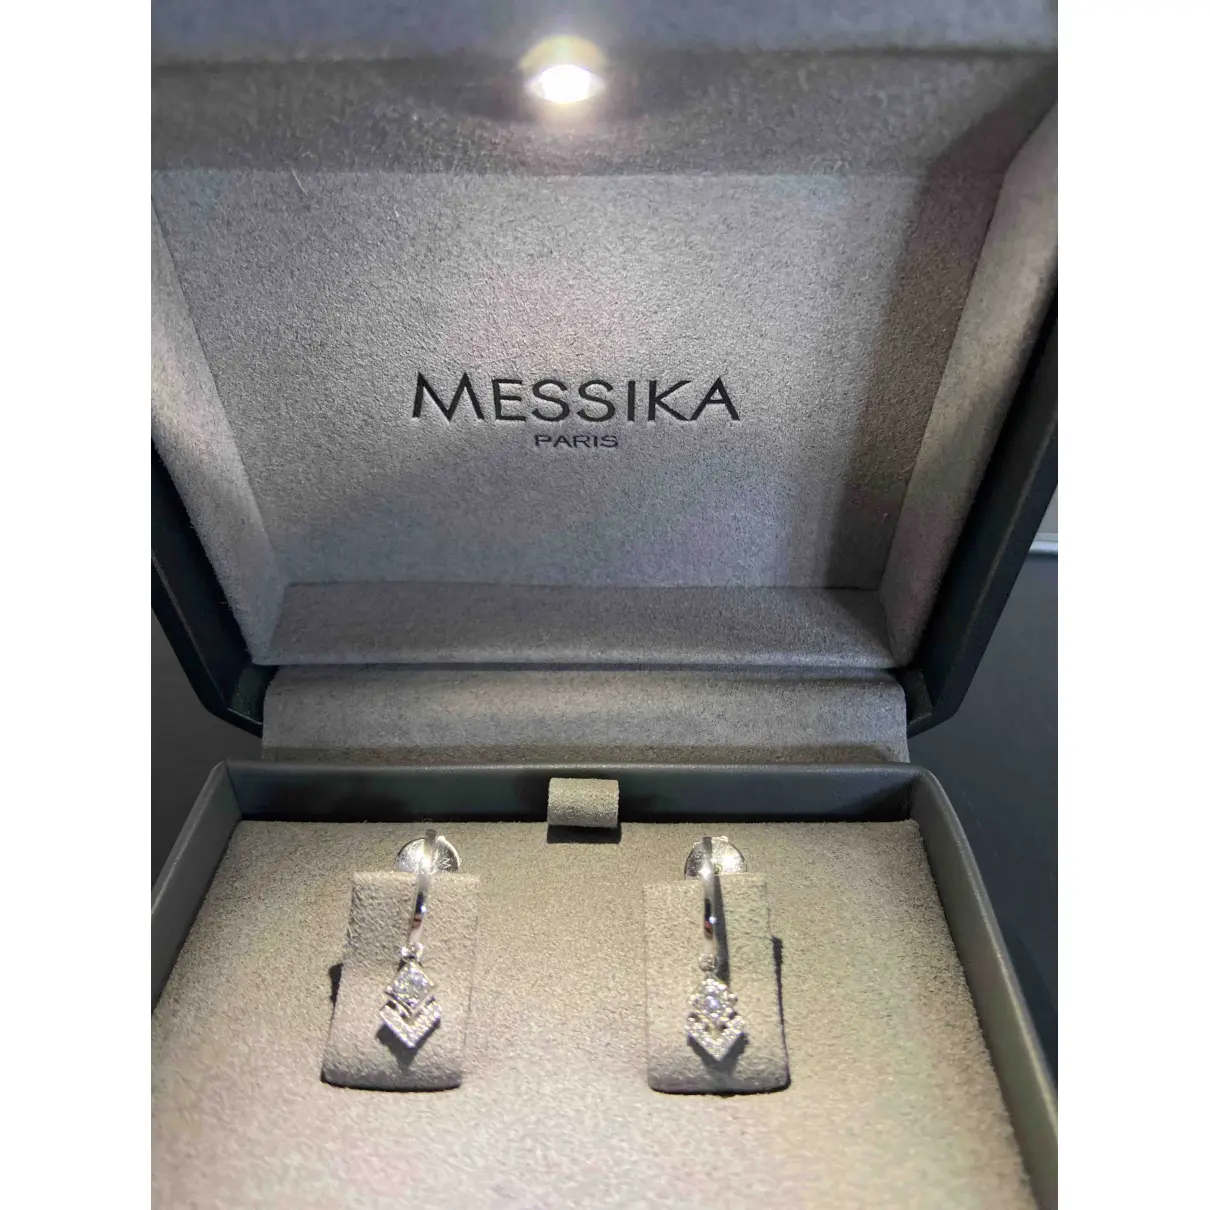 Buy Messika White gold earrings online